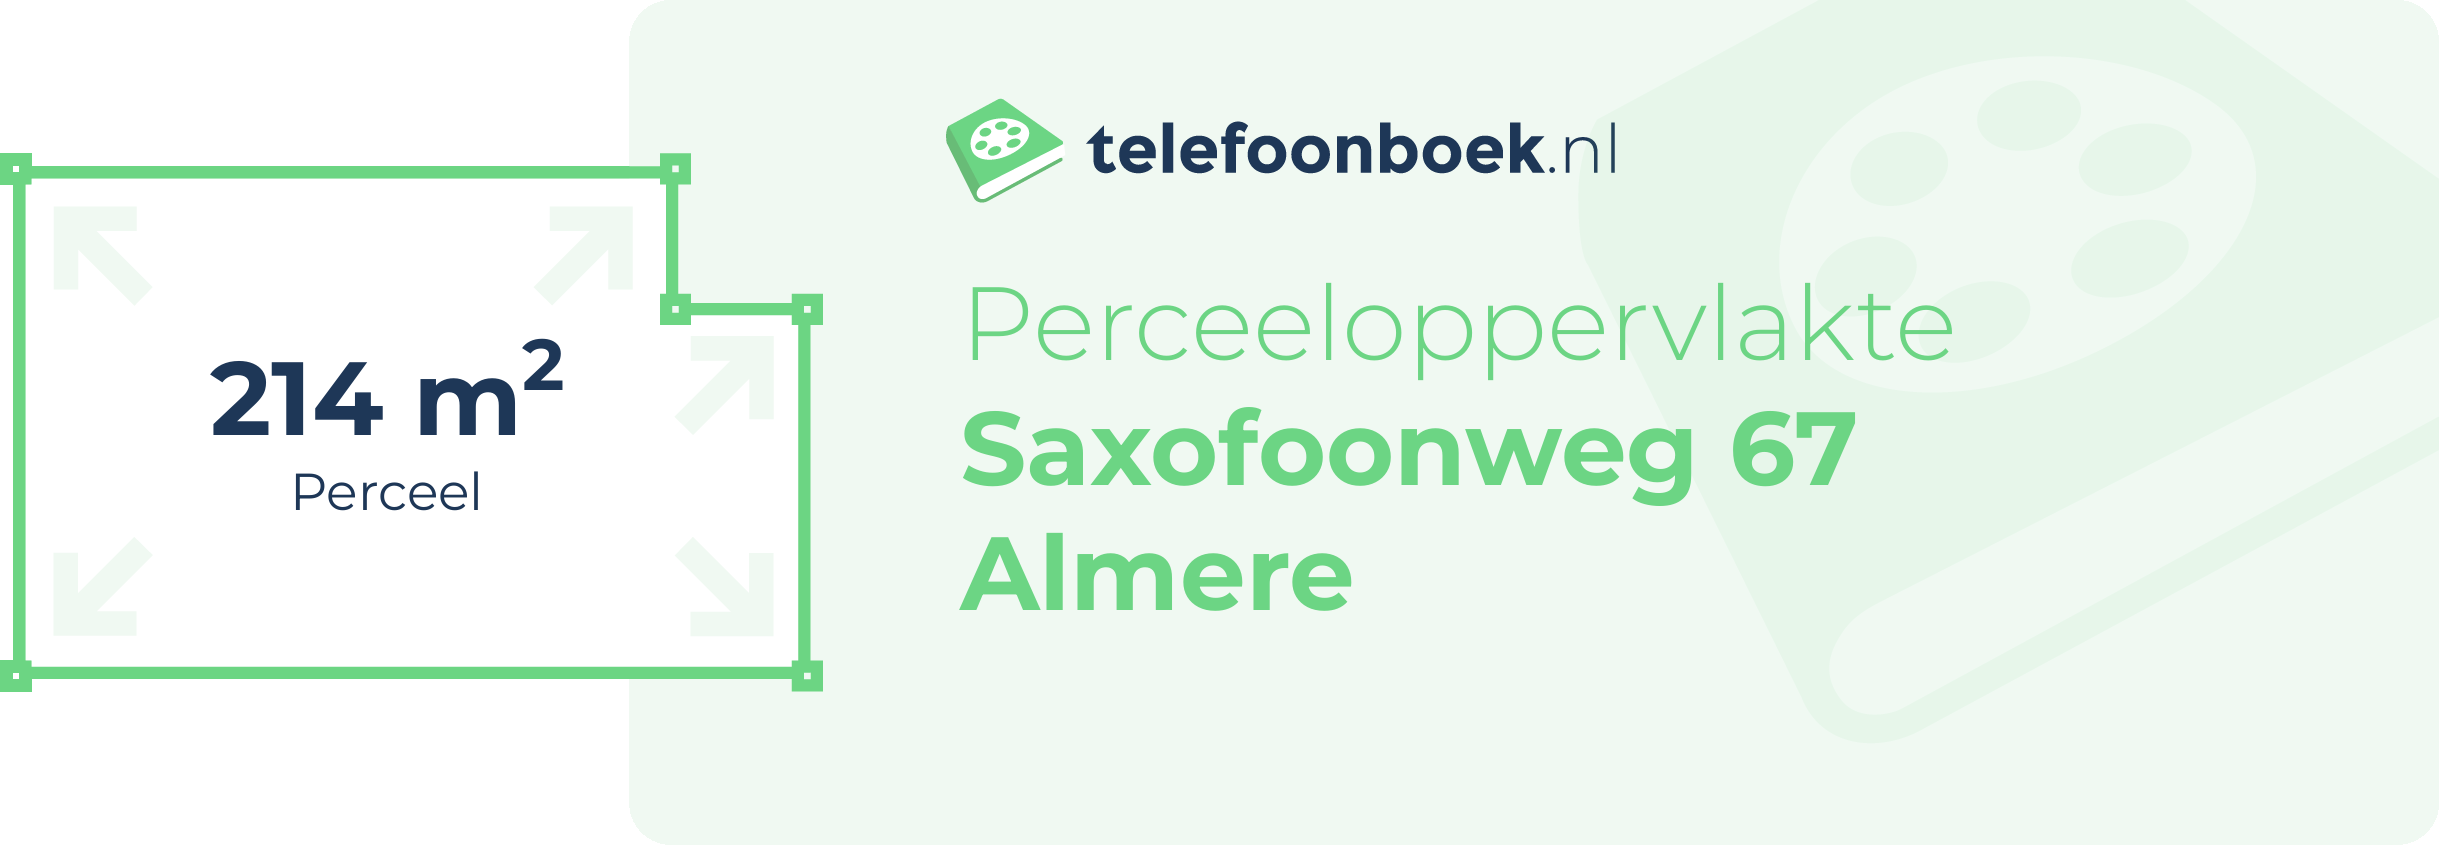 Perceeloppervlakte Saxofoonweg 67 Almere